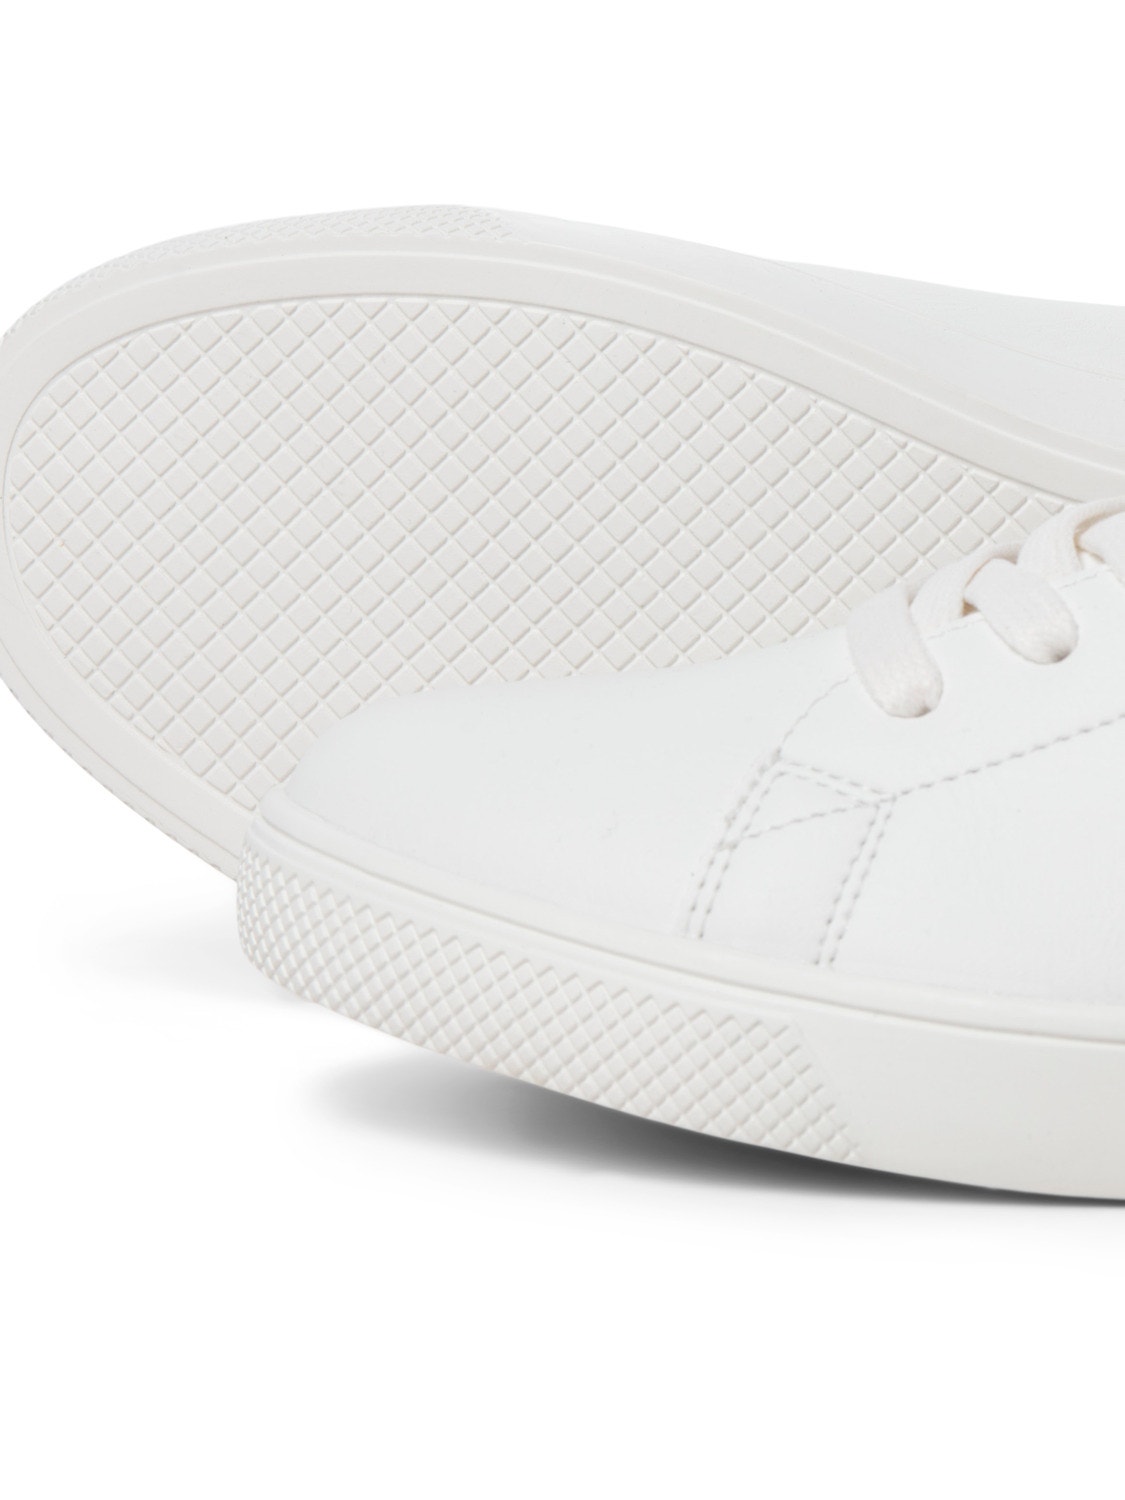 Jack & Jones Sneaker Polyester -White - 12203642